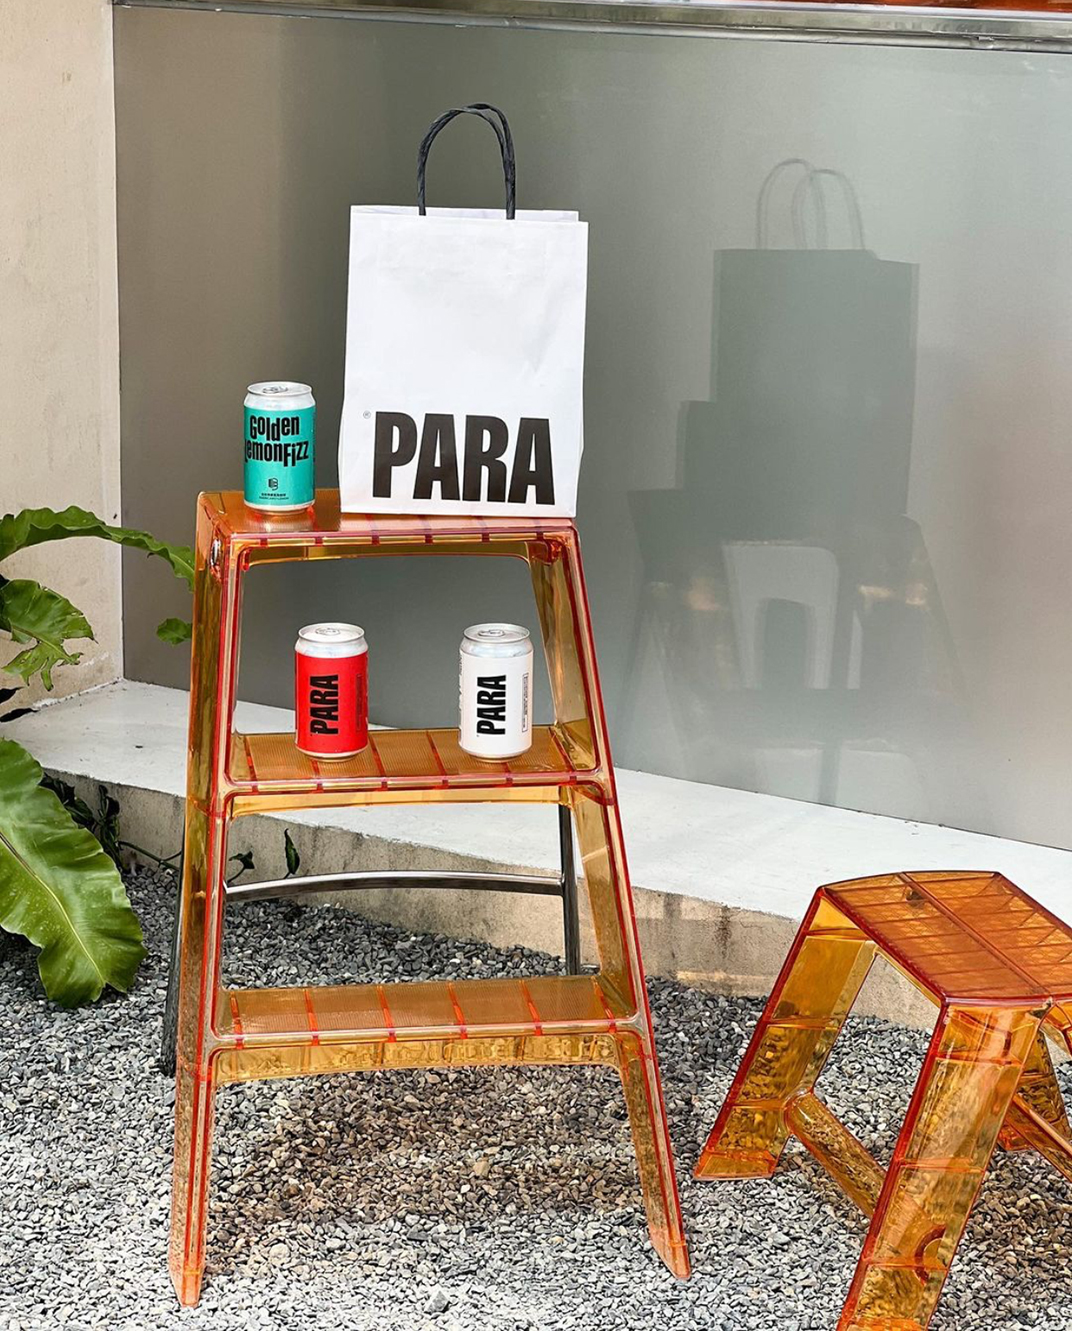 新型外卖咖啡店PARA Coffee 台湾北京 上海 杭州 成都 咖啡店 外卖 移动 餐车 快闪店 logo设计 vi设计 空间设计